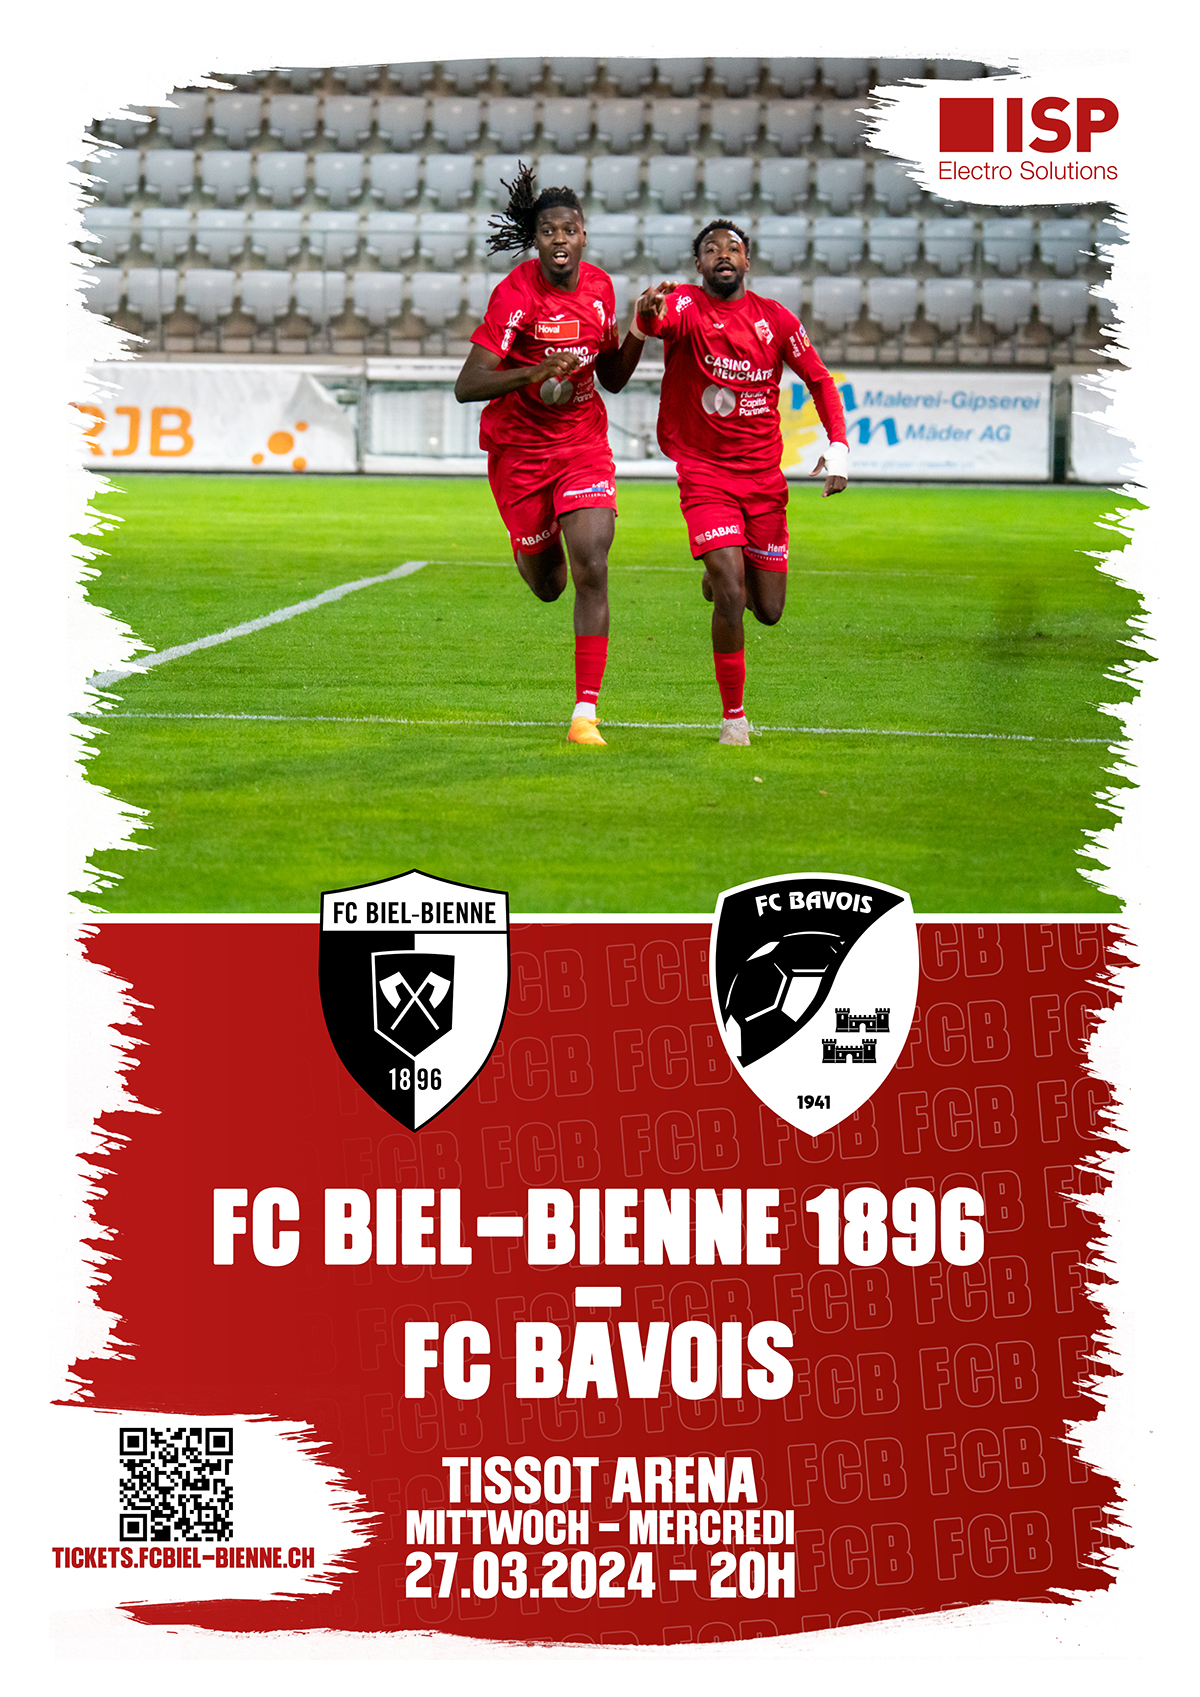 Herzlich willkommen dem FC Bavois und seinen mitgereisten Fans